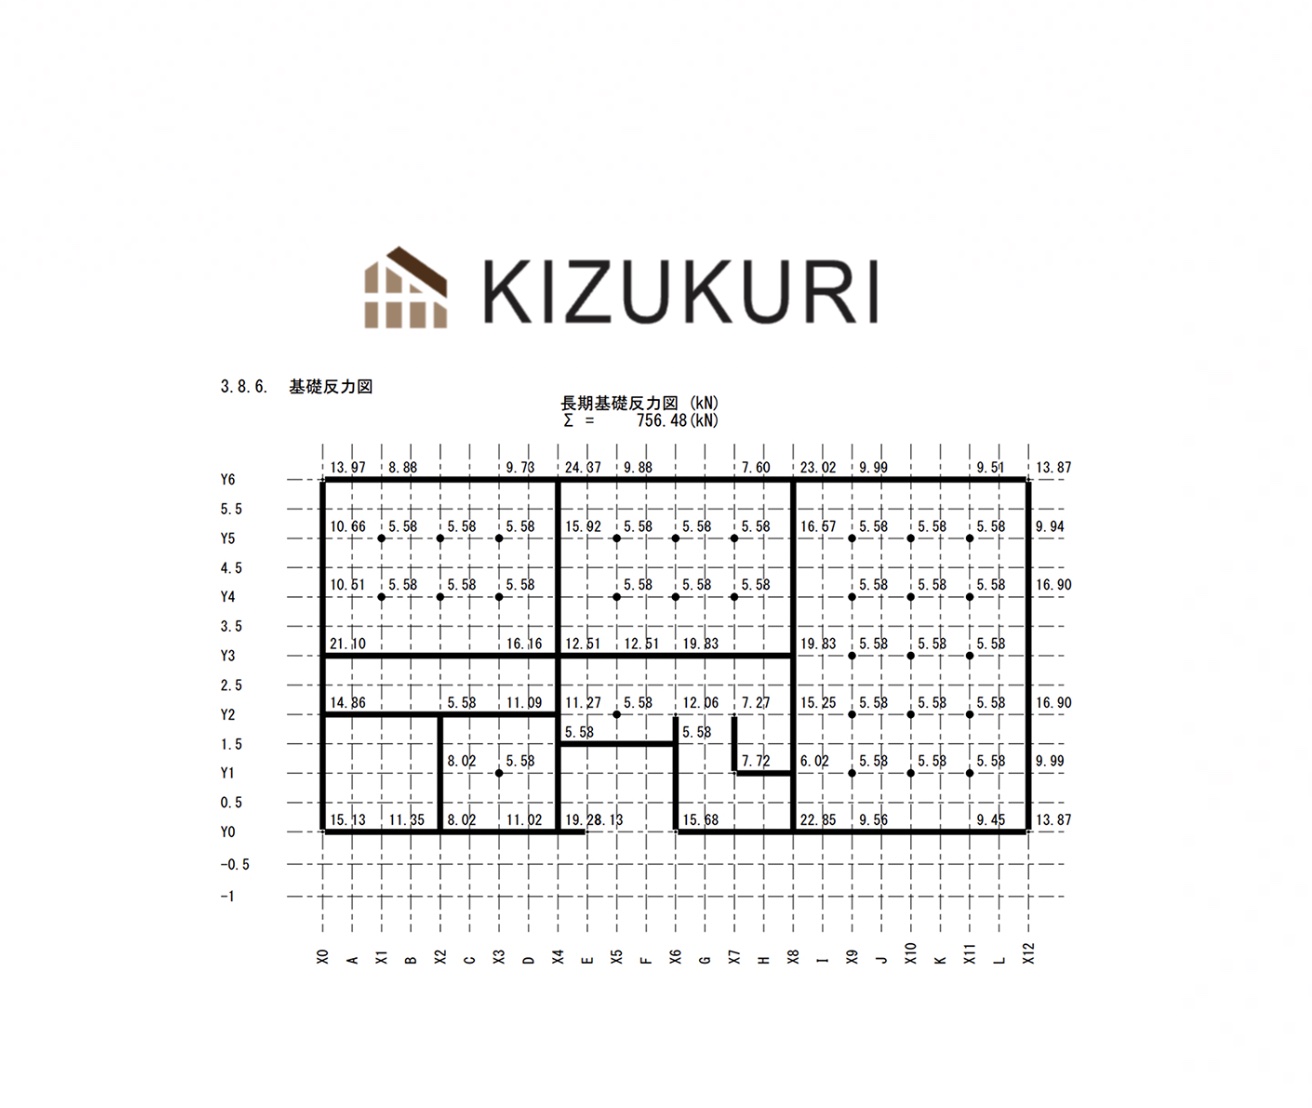 2×4向け「KIZUKURI」に3号建築申請用図書を追加